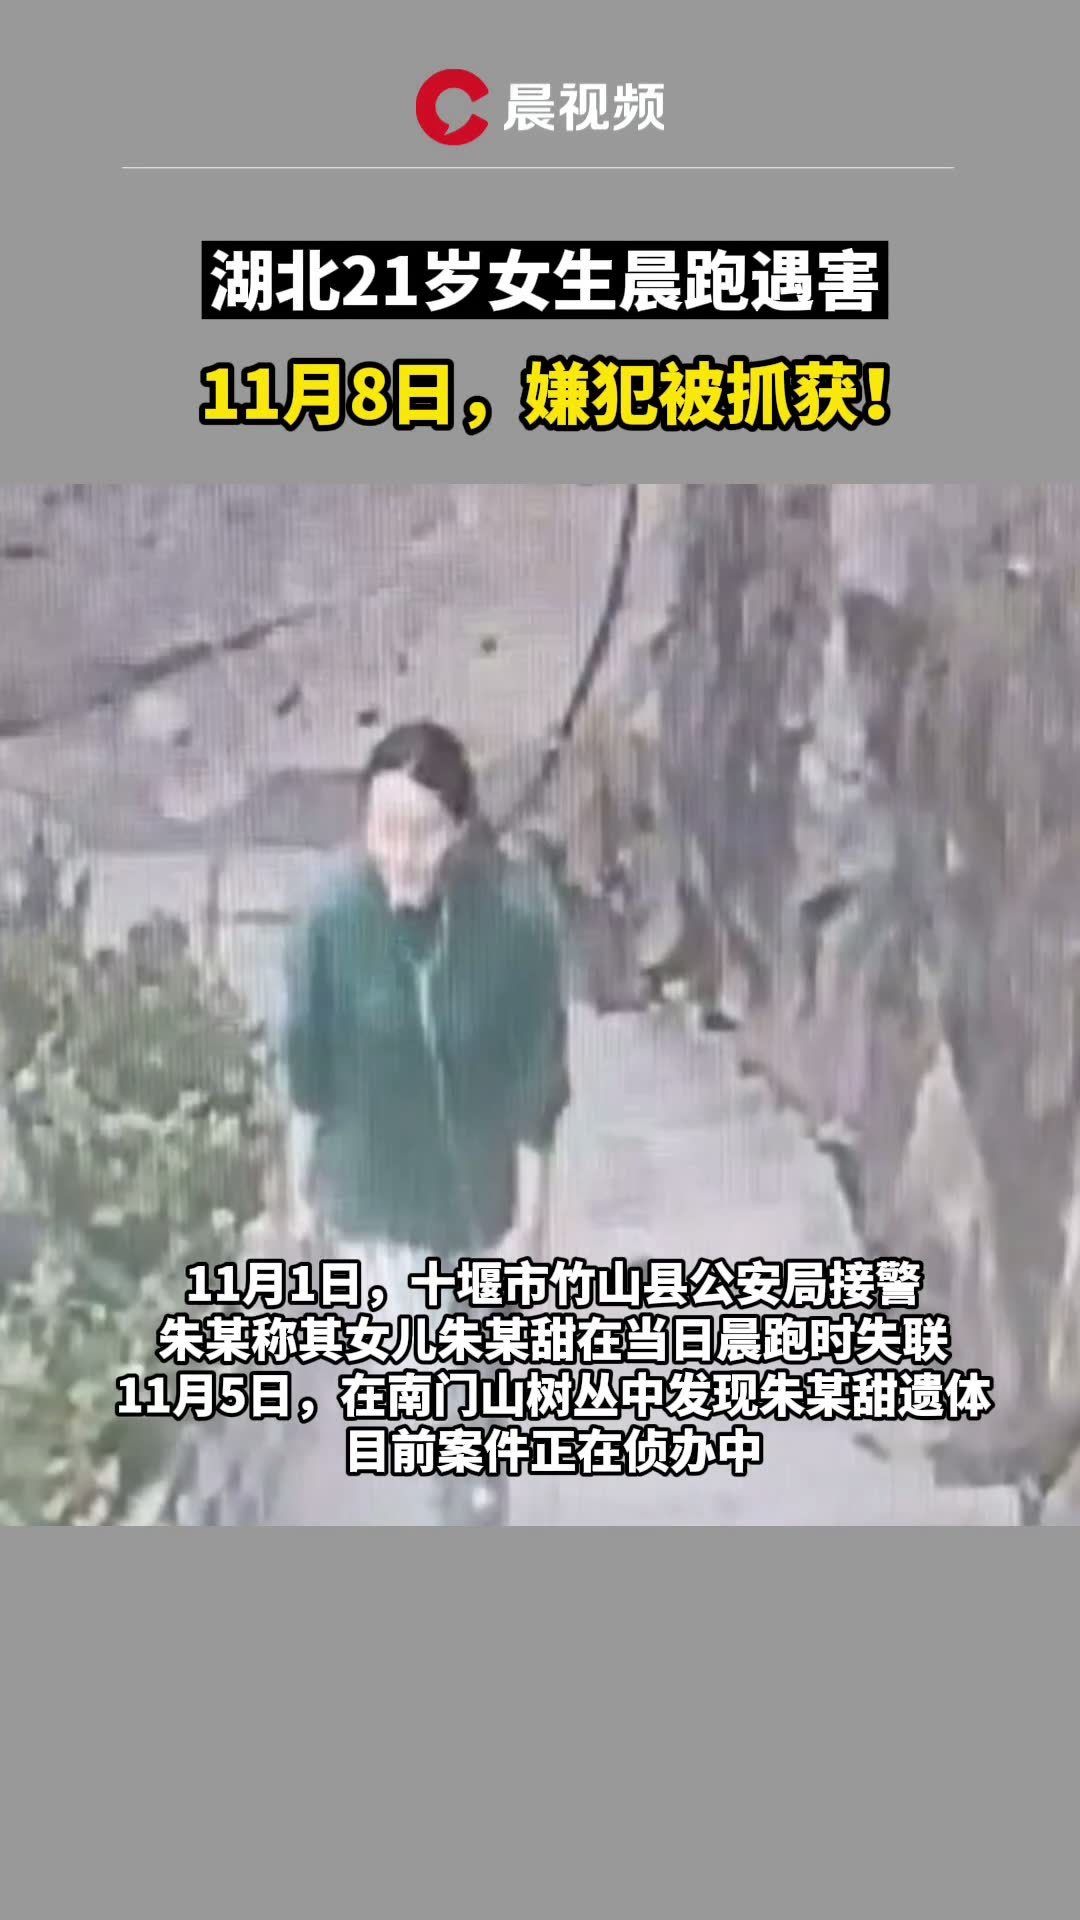 湖北女孩晨跑遇害 嫌犯已被抓获 警方通报-中国网